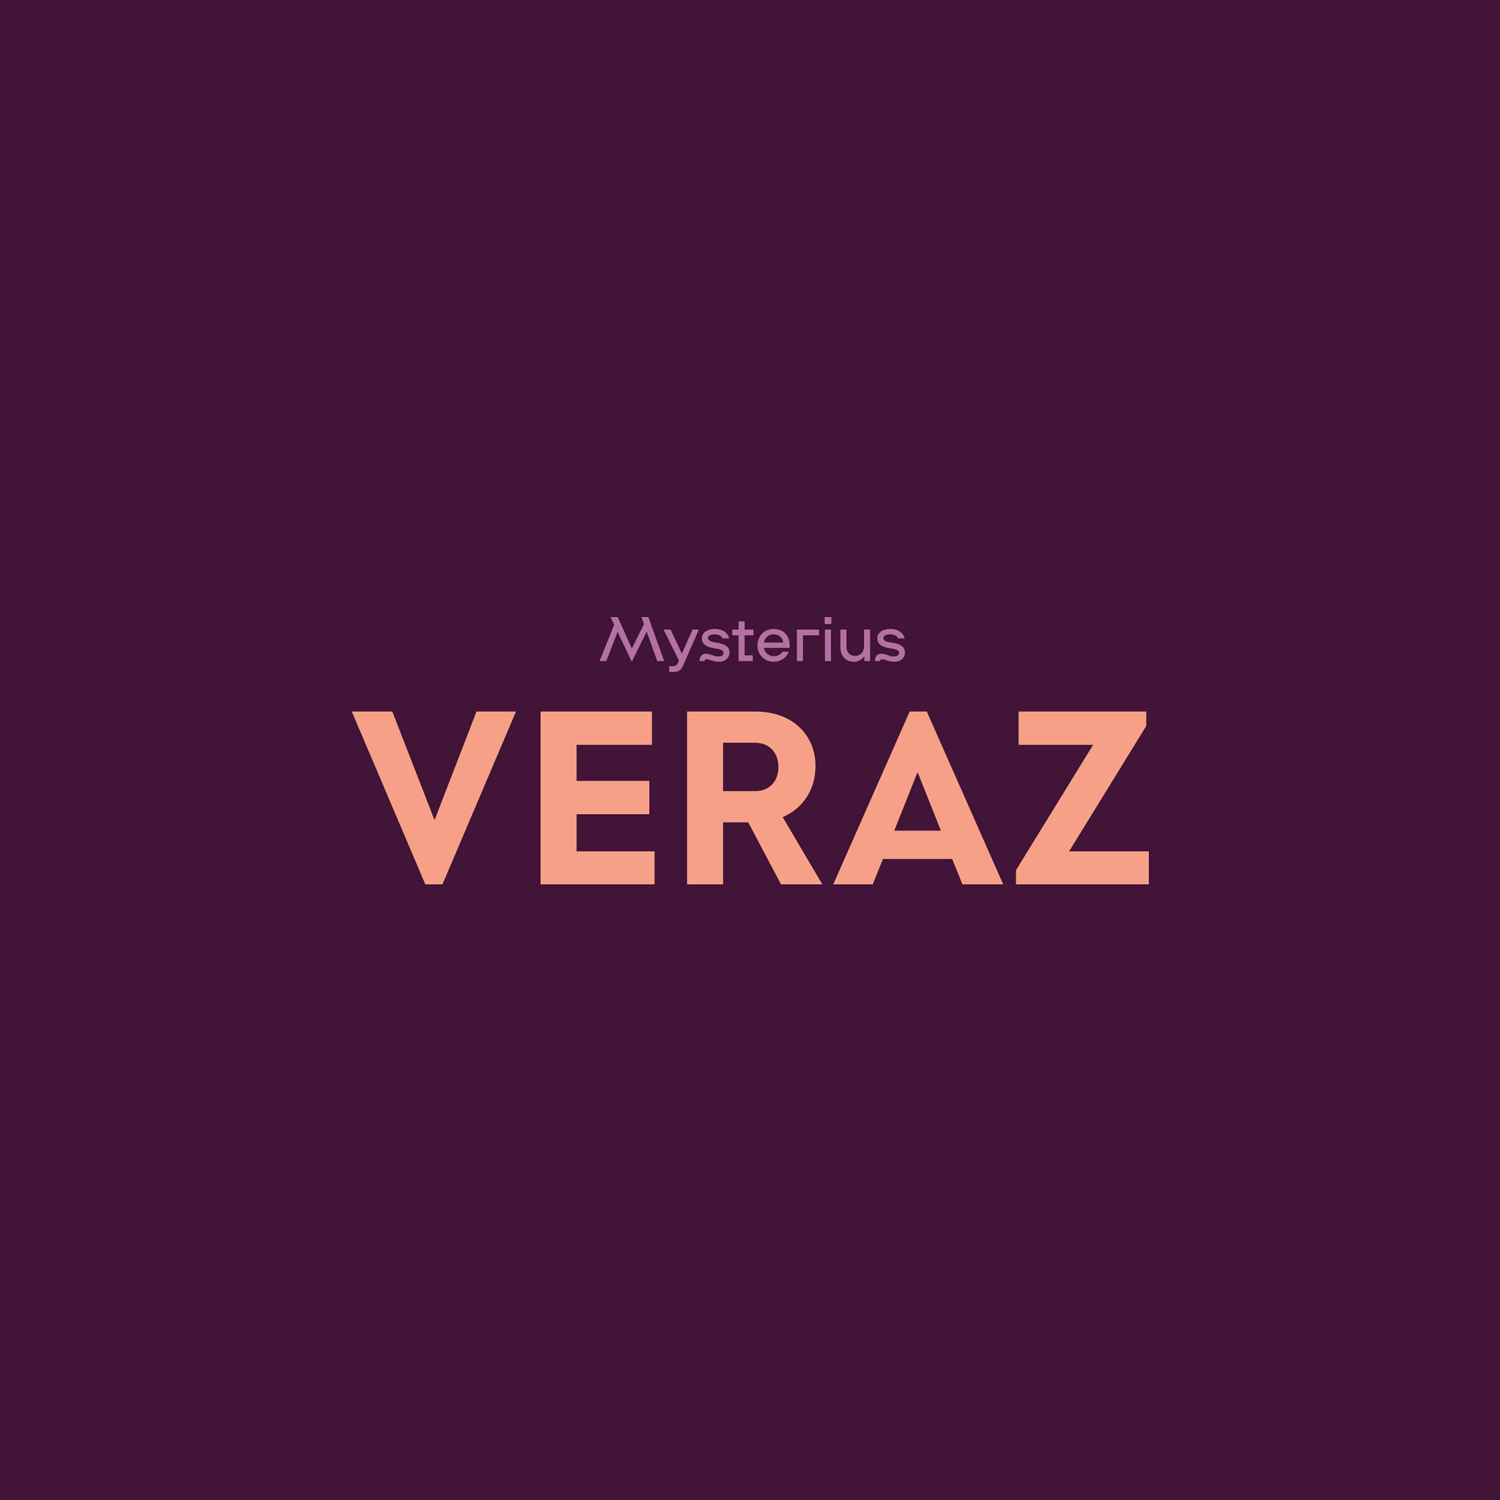 Product_01_Veraz_A